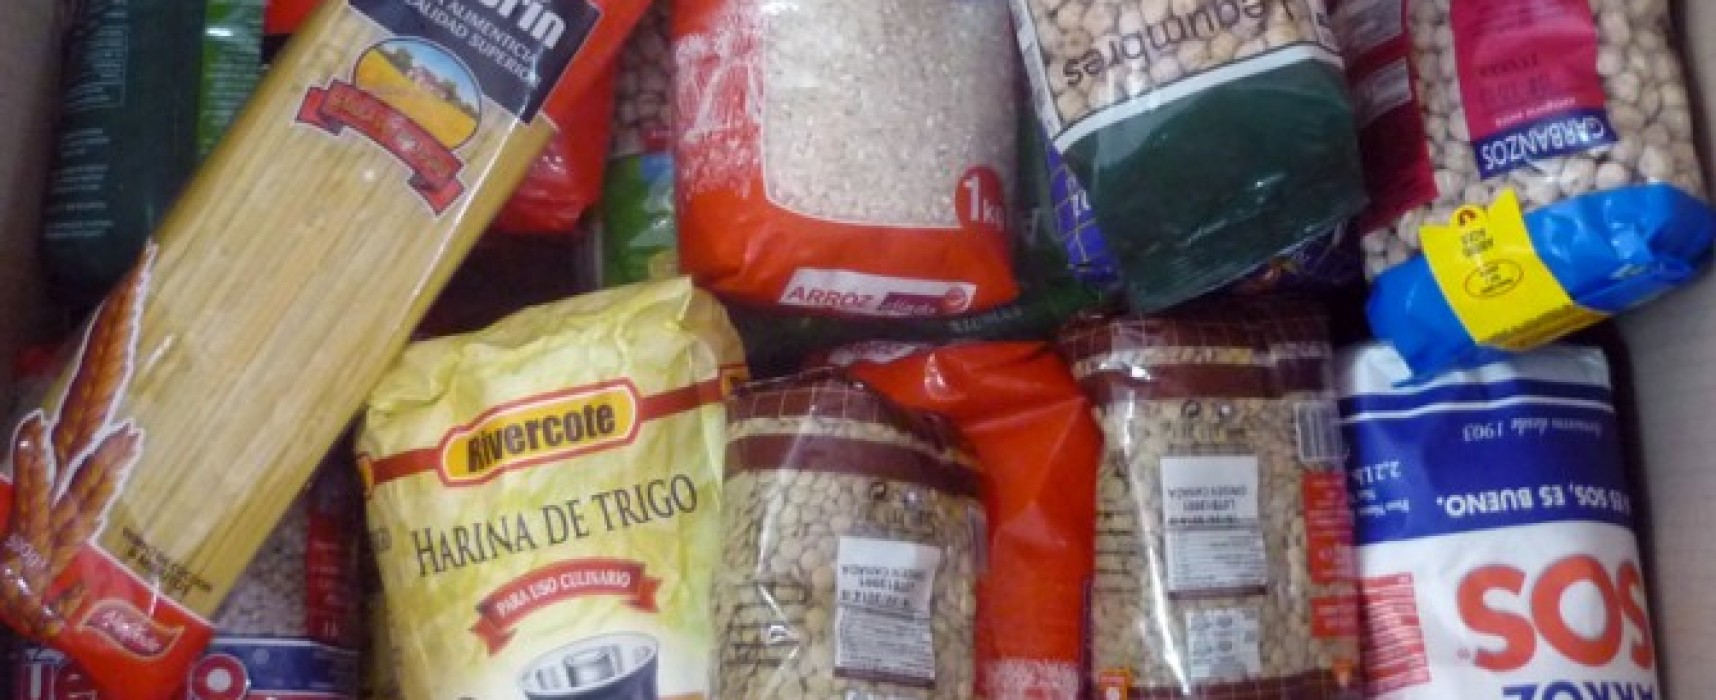 Correos inicia una campaña de recogida de alimentos